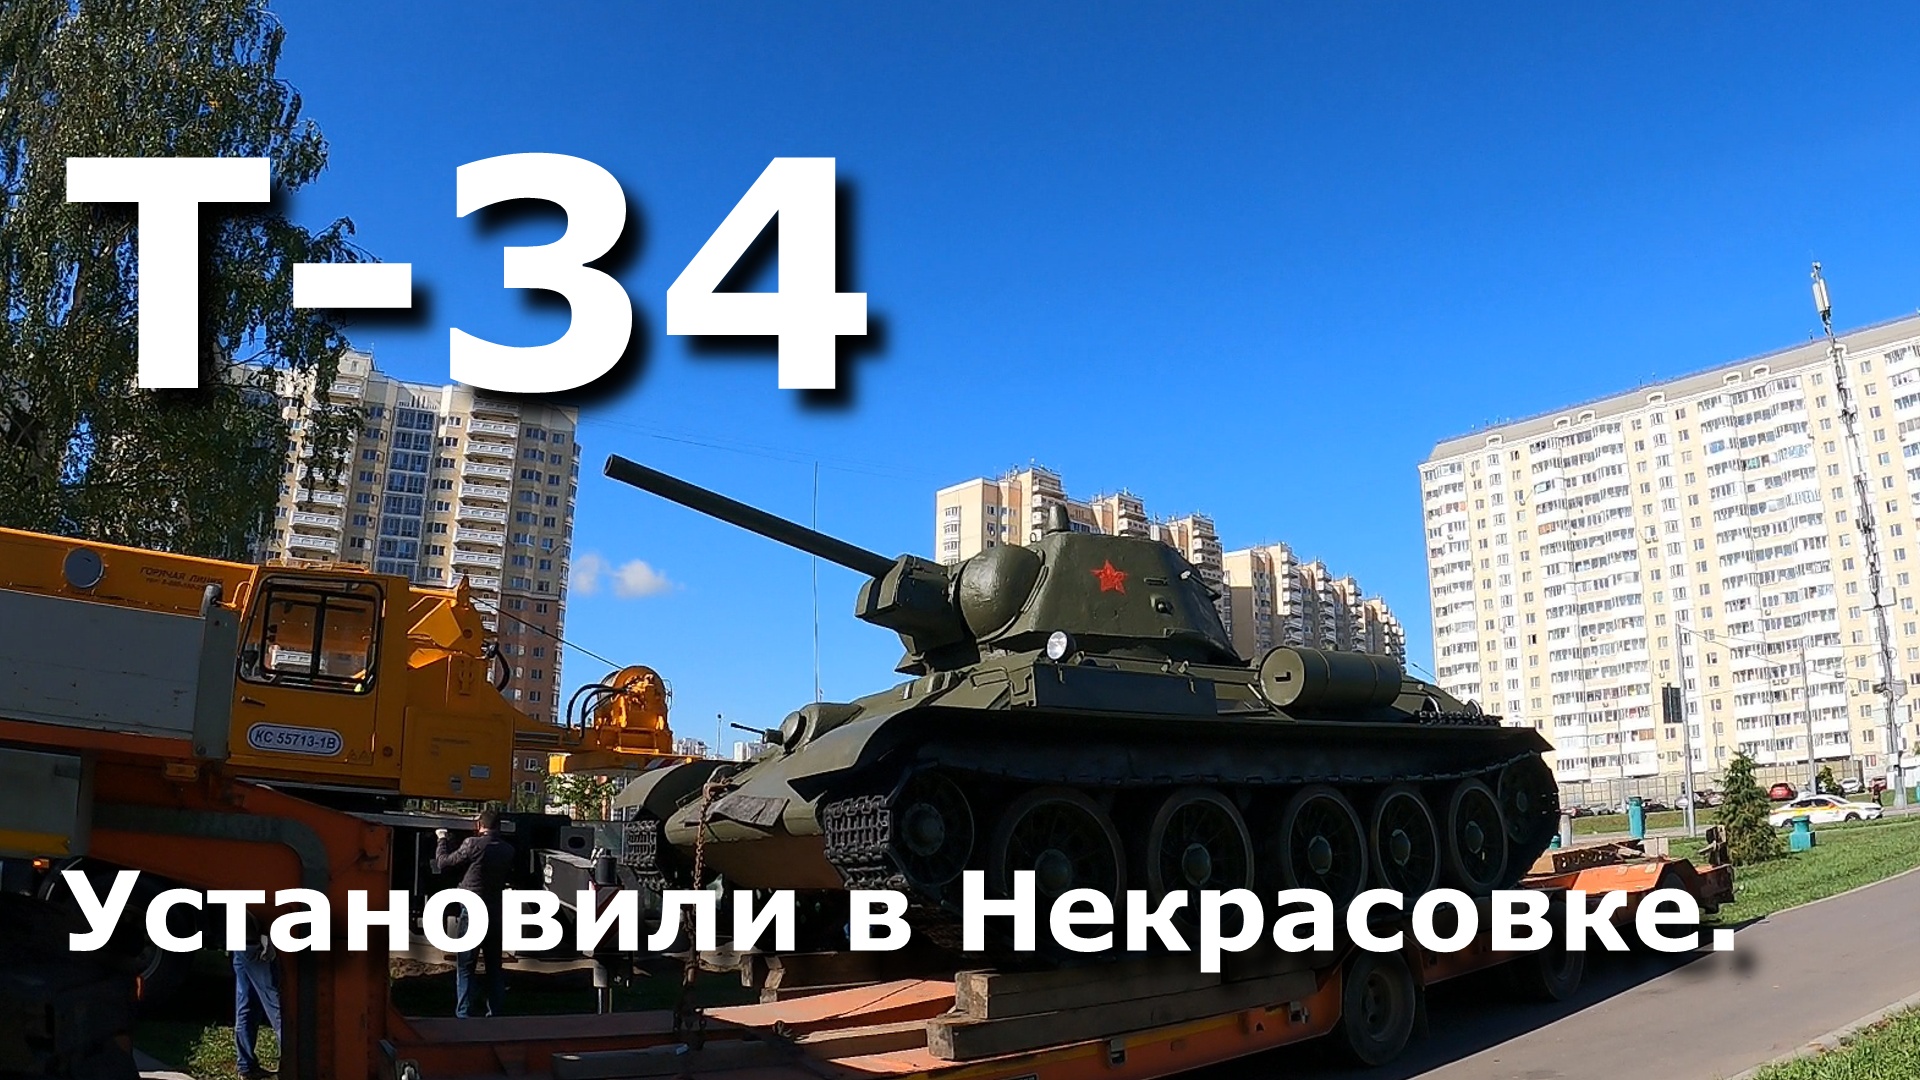 Танк Т-34 установили в новой Некрасовке. HD версия.